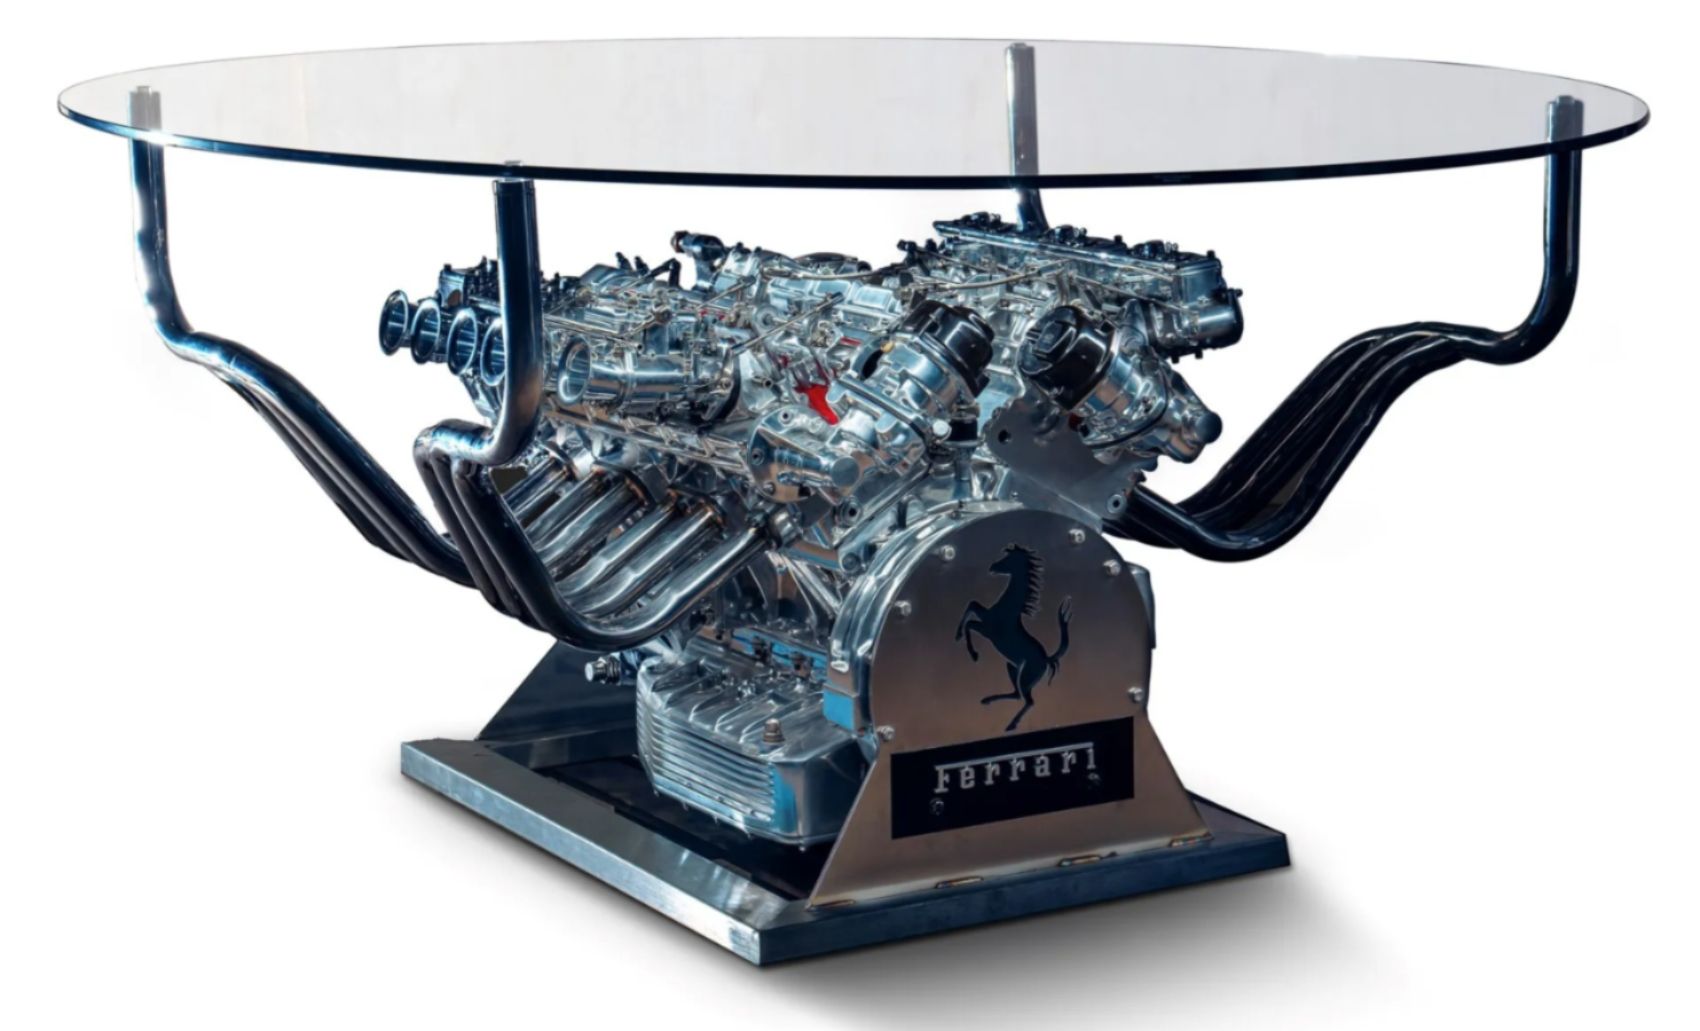 Ferrari V12 Engine Table